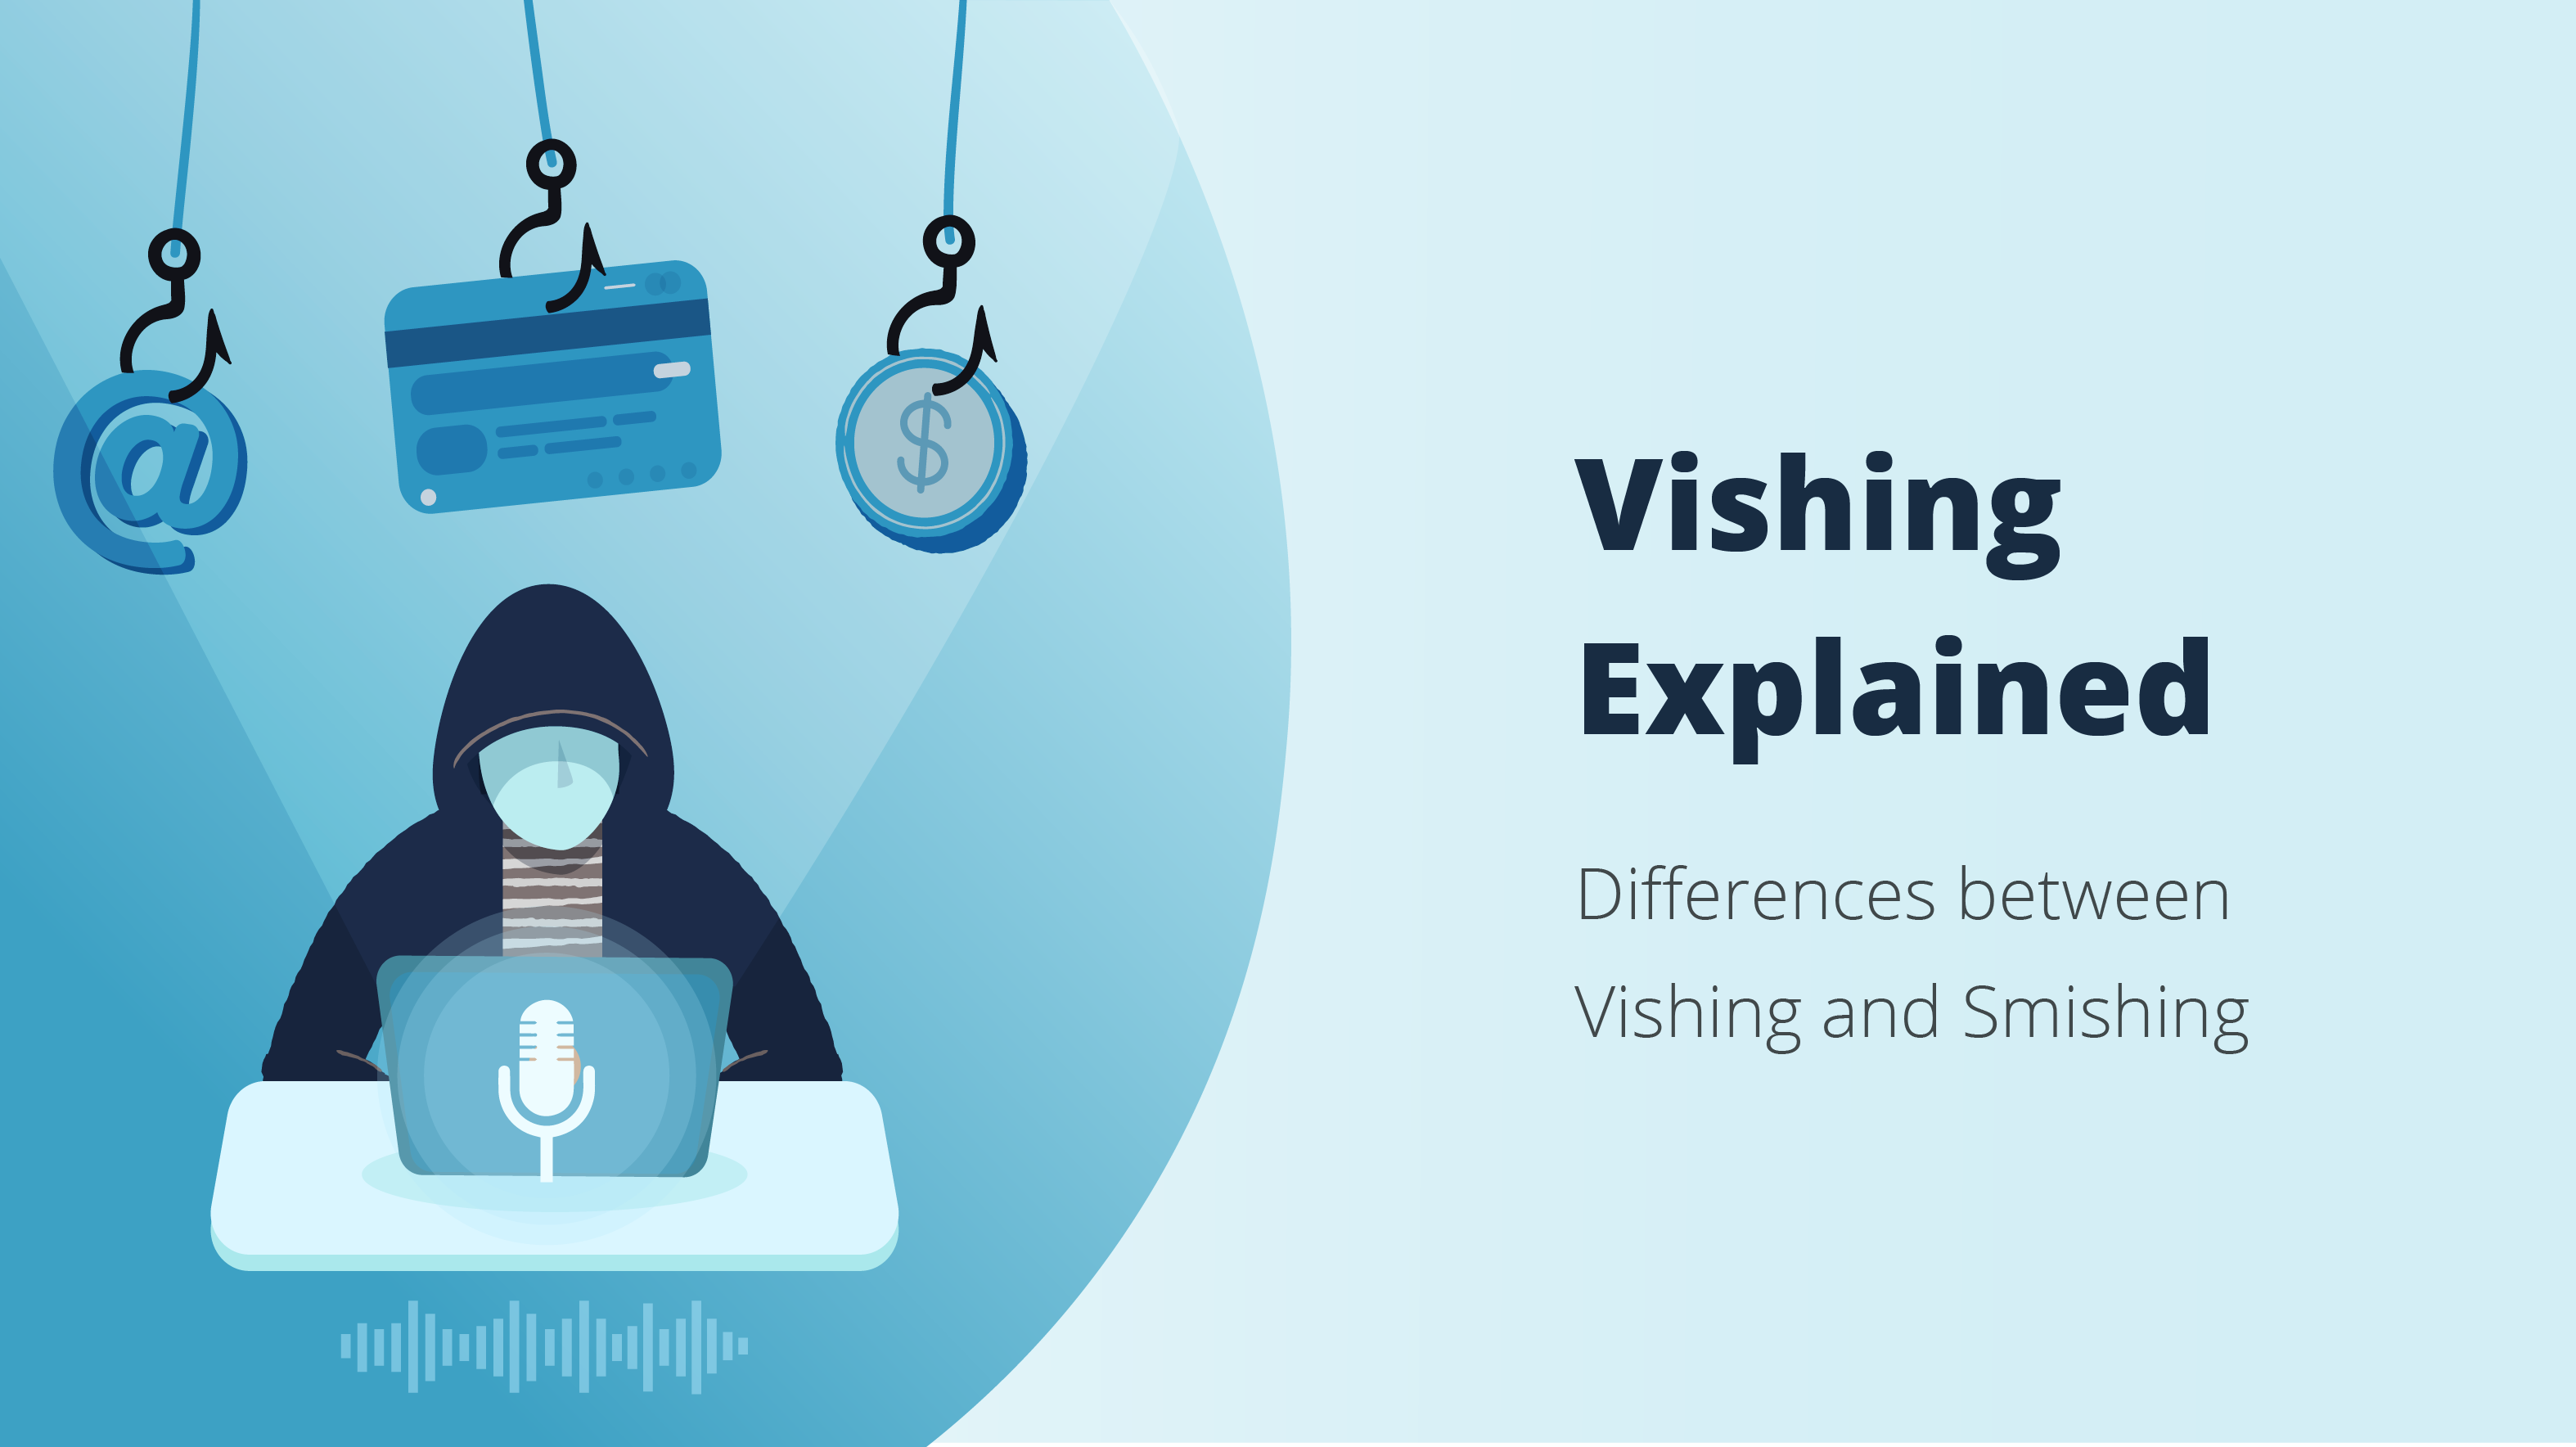 Vishing Explained: What are Vishing and Smishing?